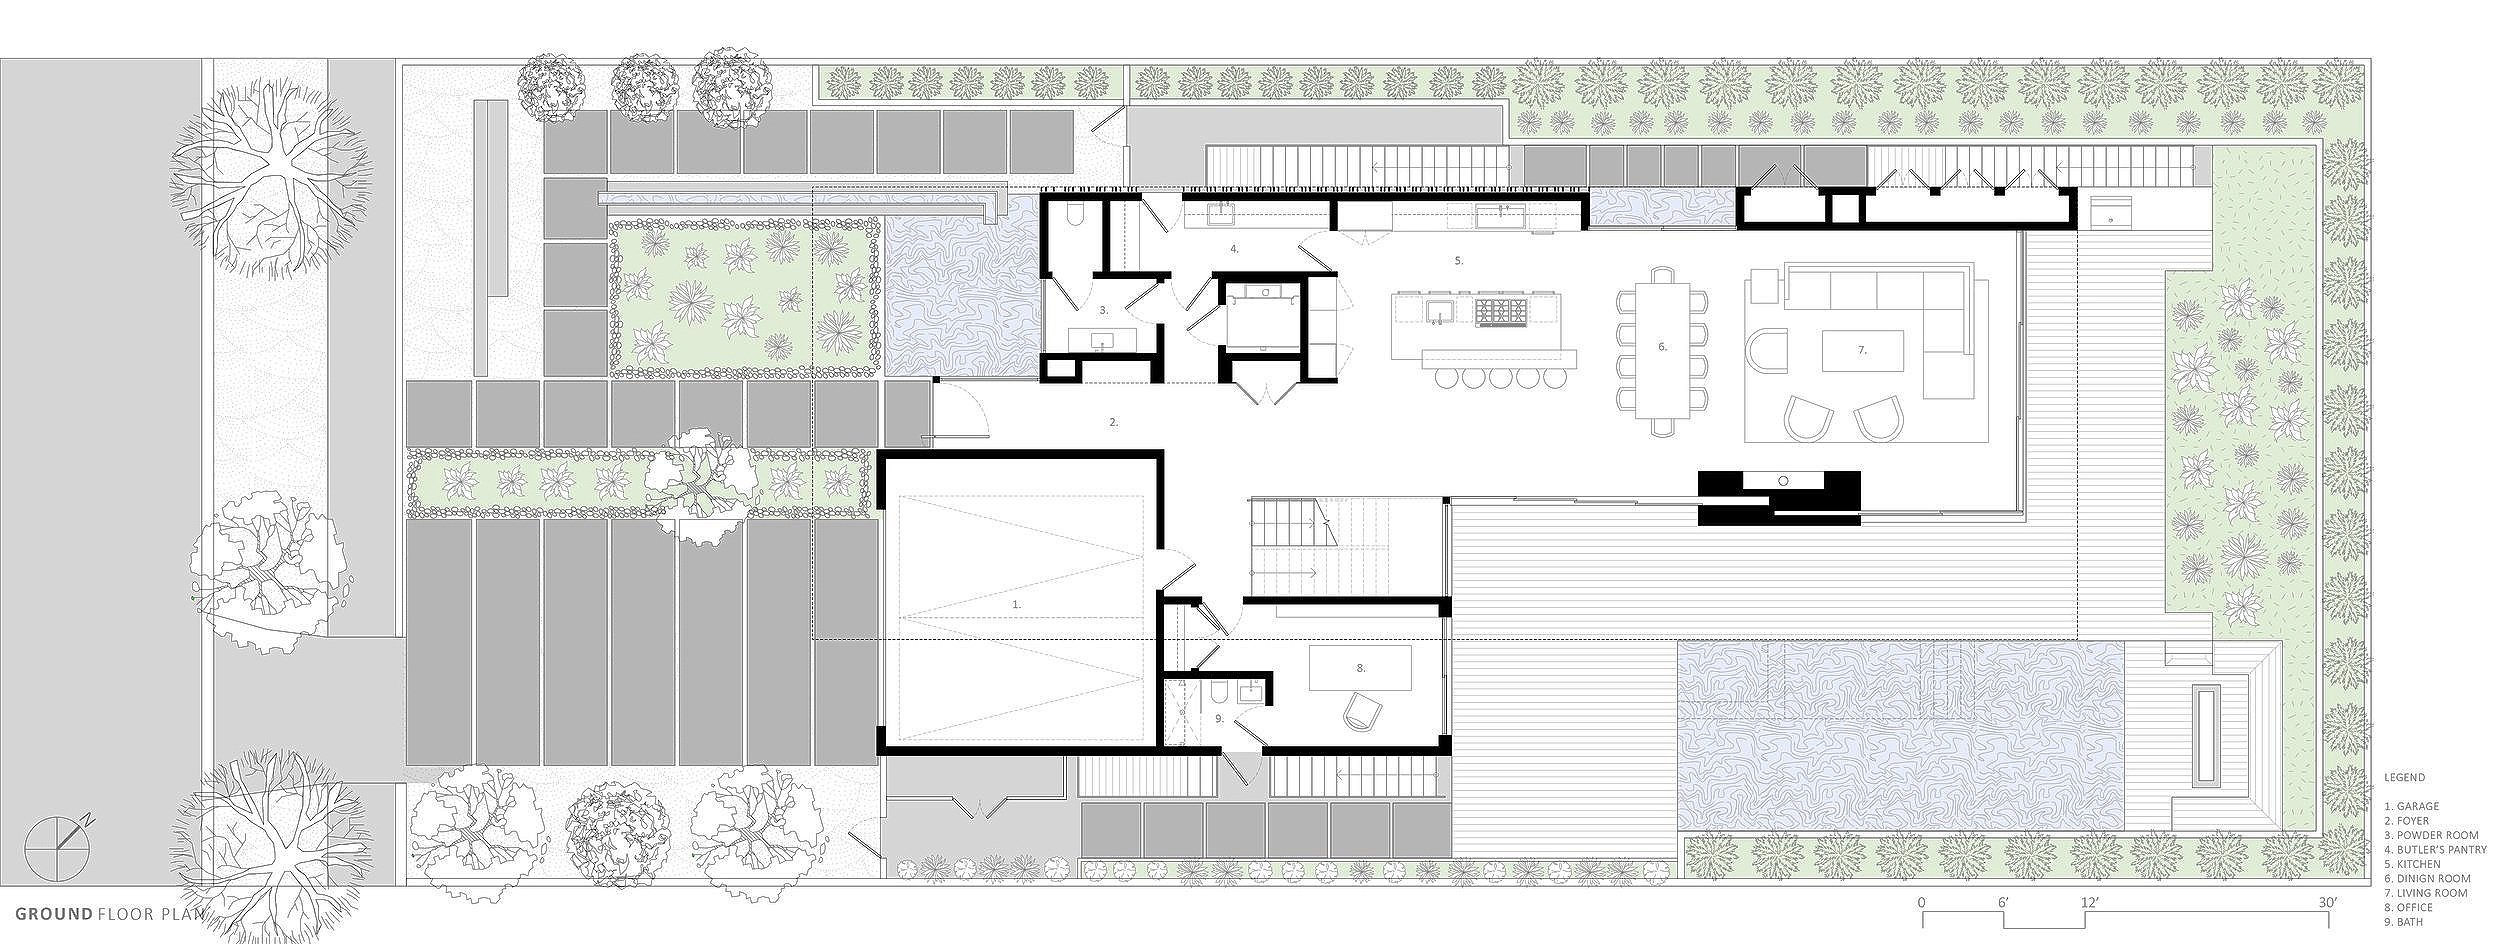 bspk-design-architecture-california-7700-residenital-fin-house-ground+floor+plan.jpg